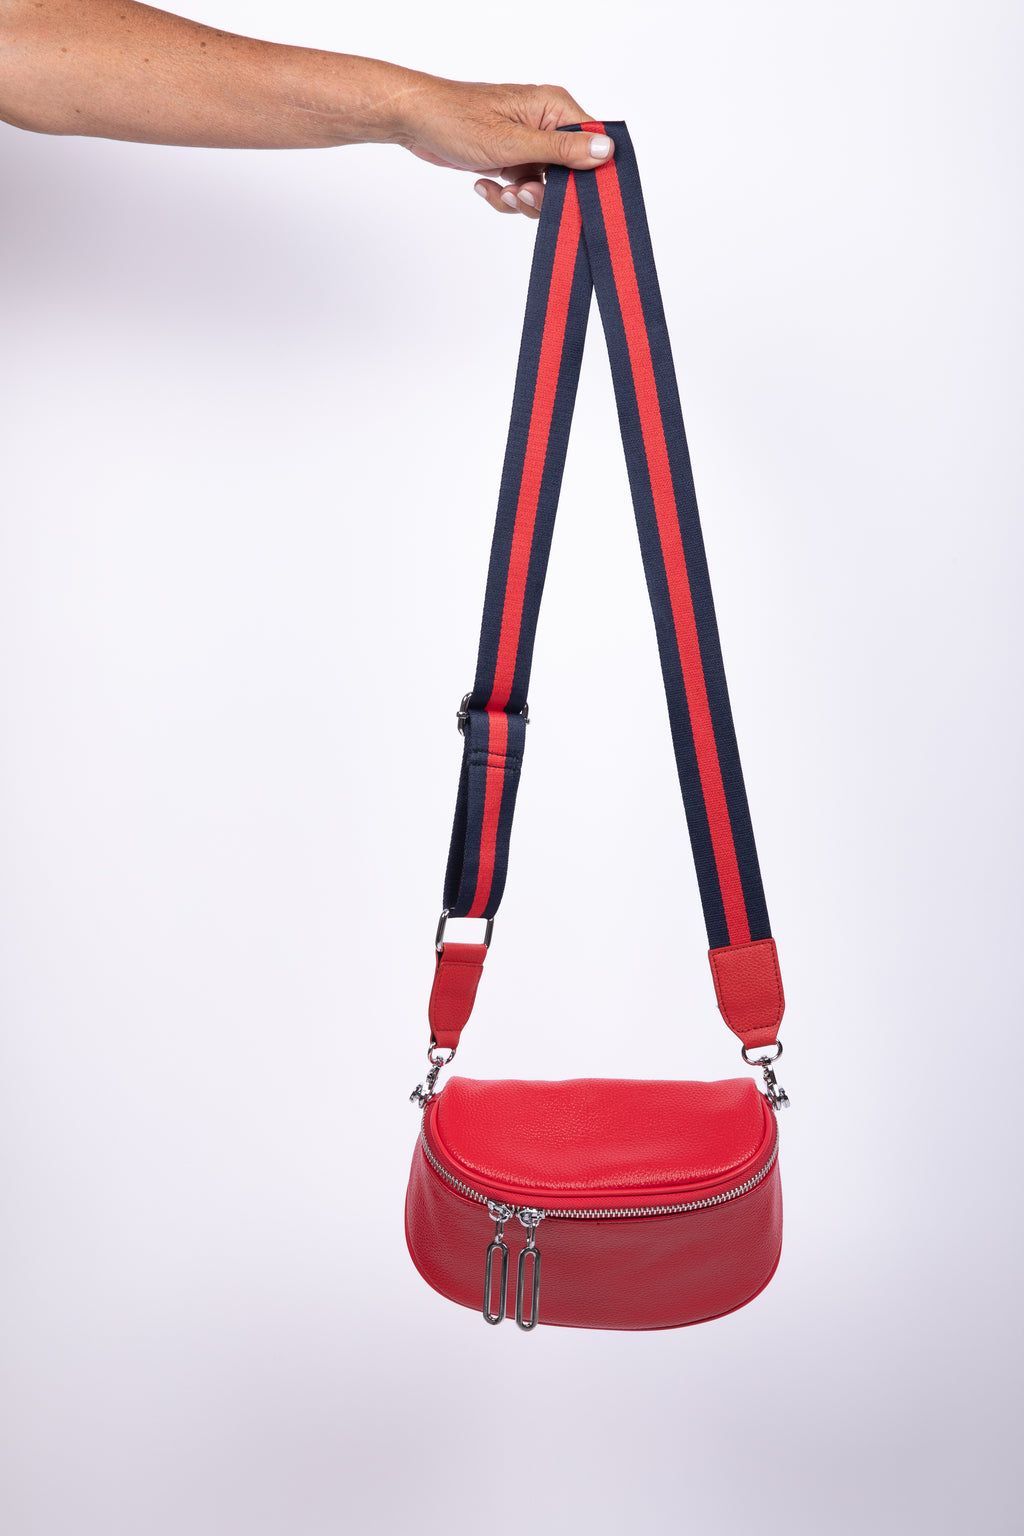 Kensington Pouch Bag Red + Stripe